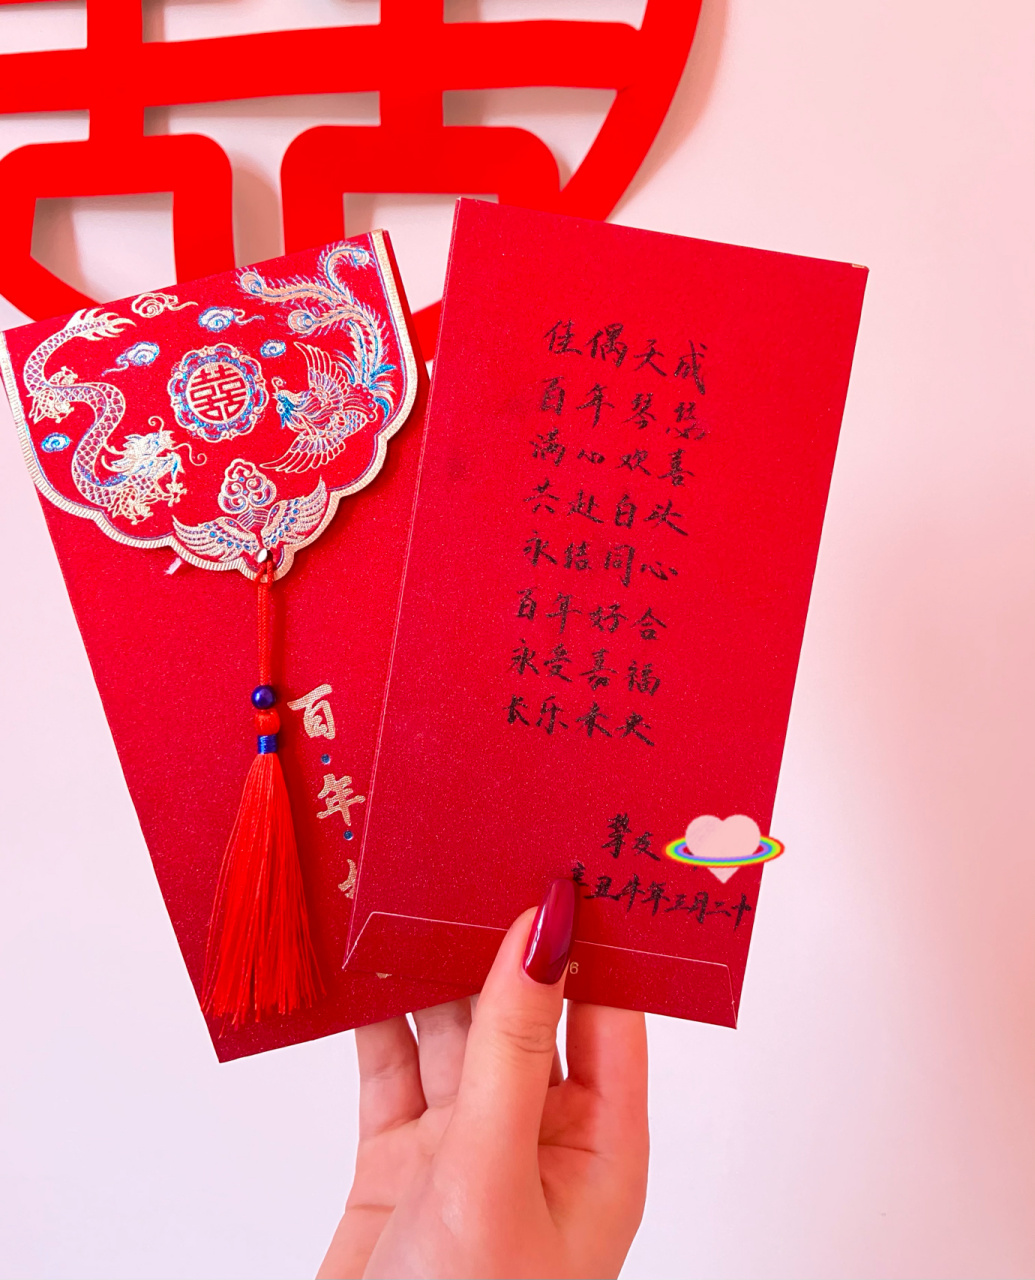 红包祝福语～ 闺蜜结婚时包的红包 红包上的祝福语一写觉得很有仪式感